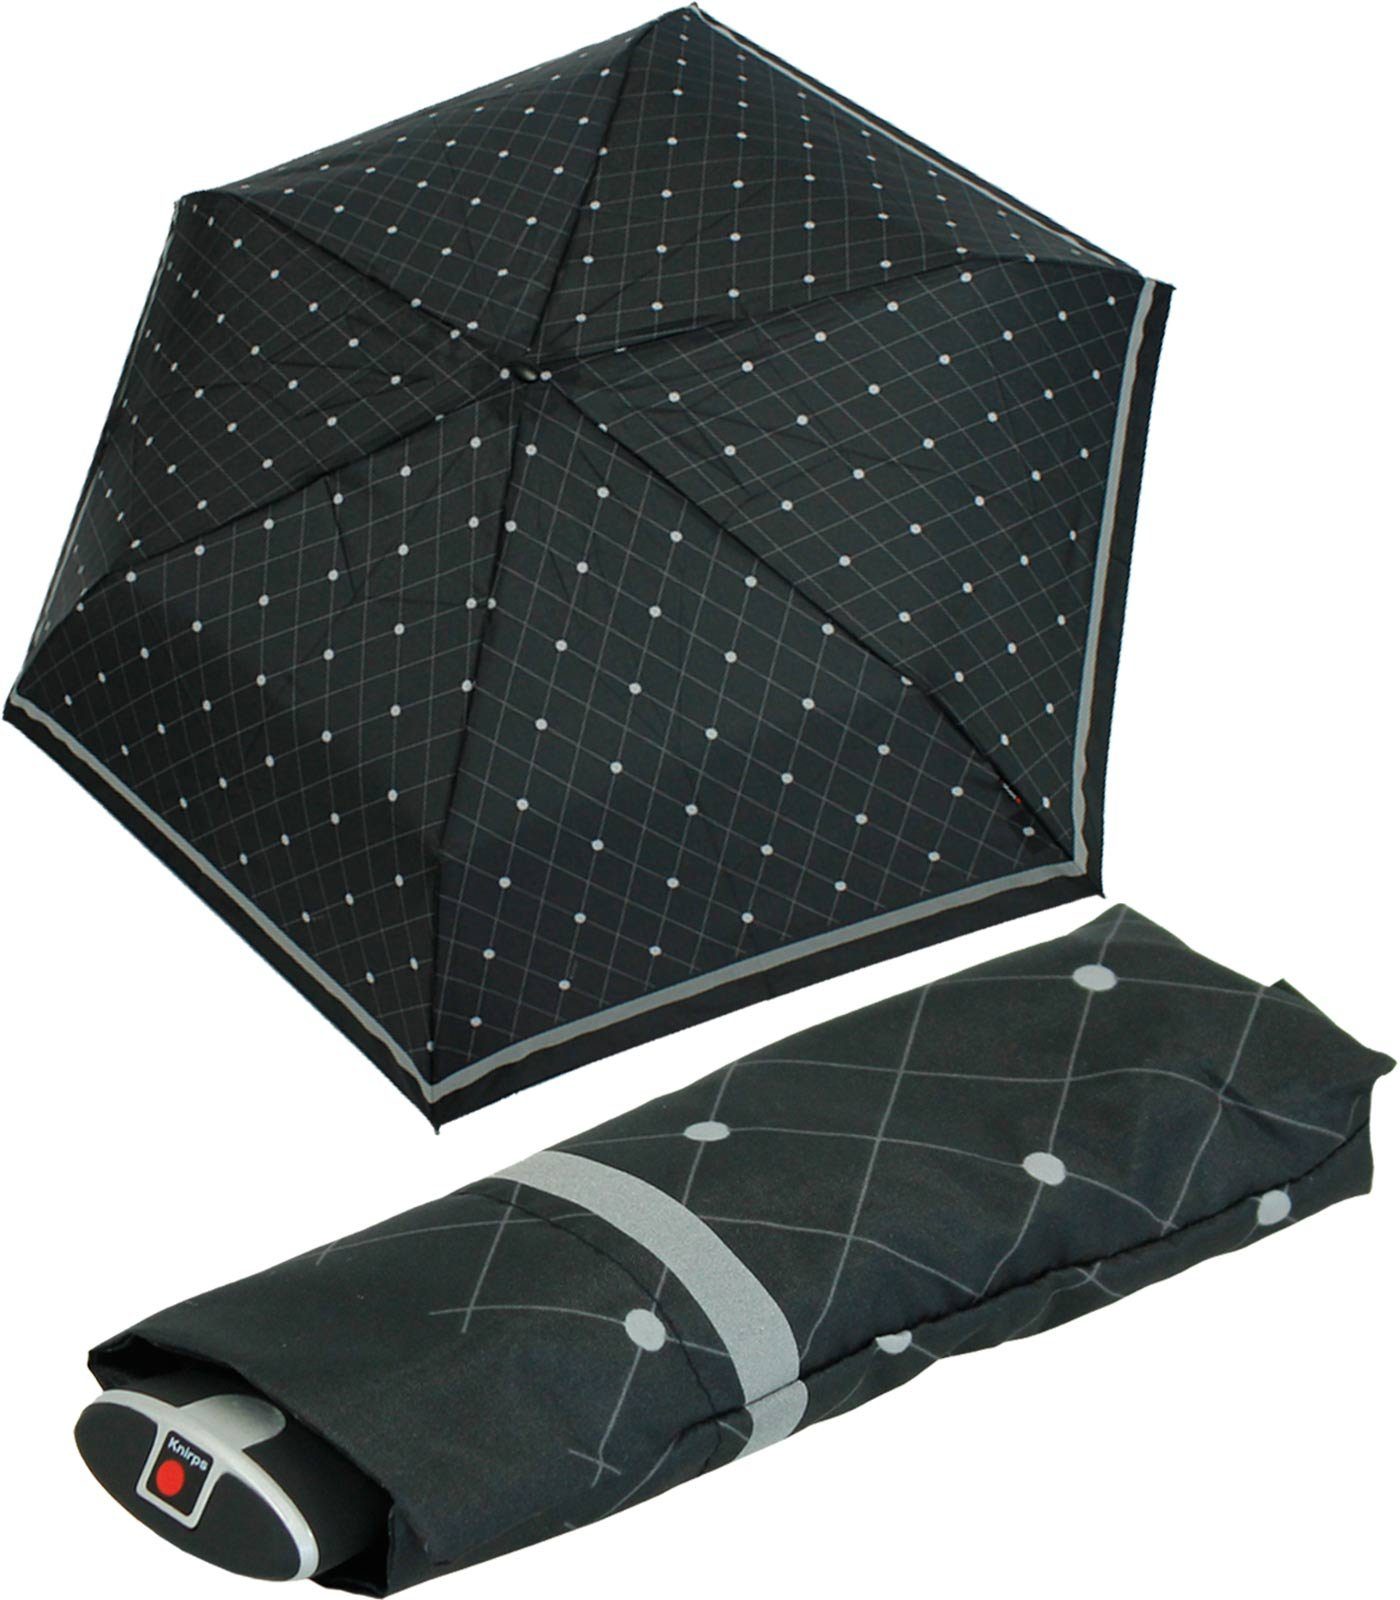 Knirps® Taschenregenschirm flacher, stabiler Schirm, passend für jede Tasche, ein treuer Begleiter, für jeden Notfall